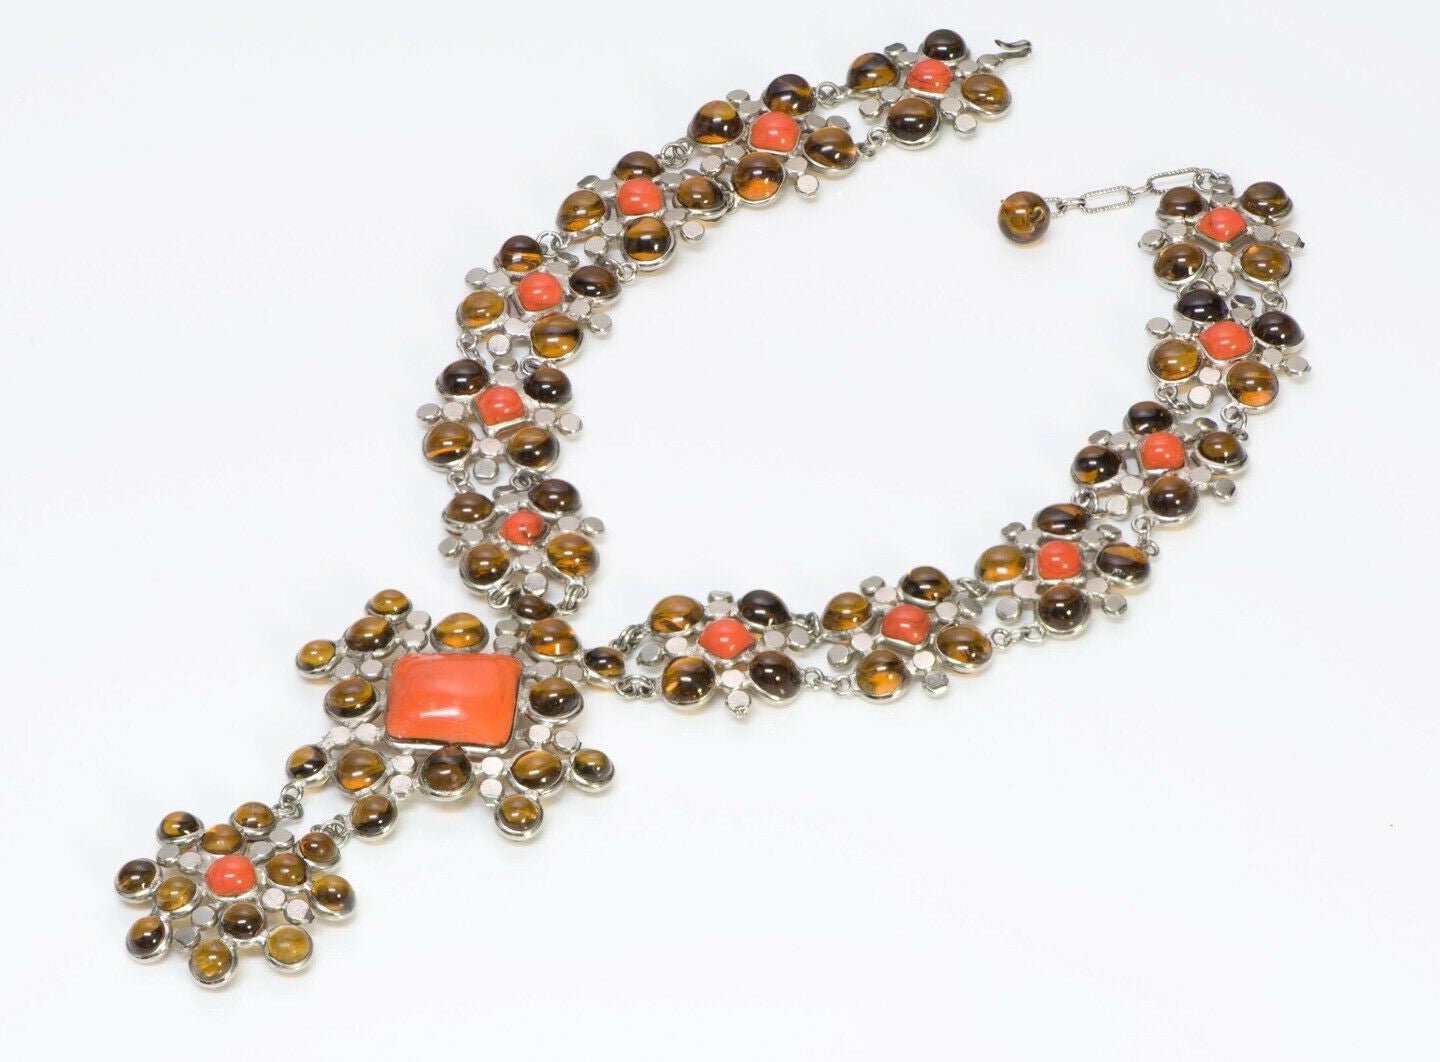 Jean Patou Christian Lacroix Gripoix 1980’s Orange Glass Necklace Earrings Set